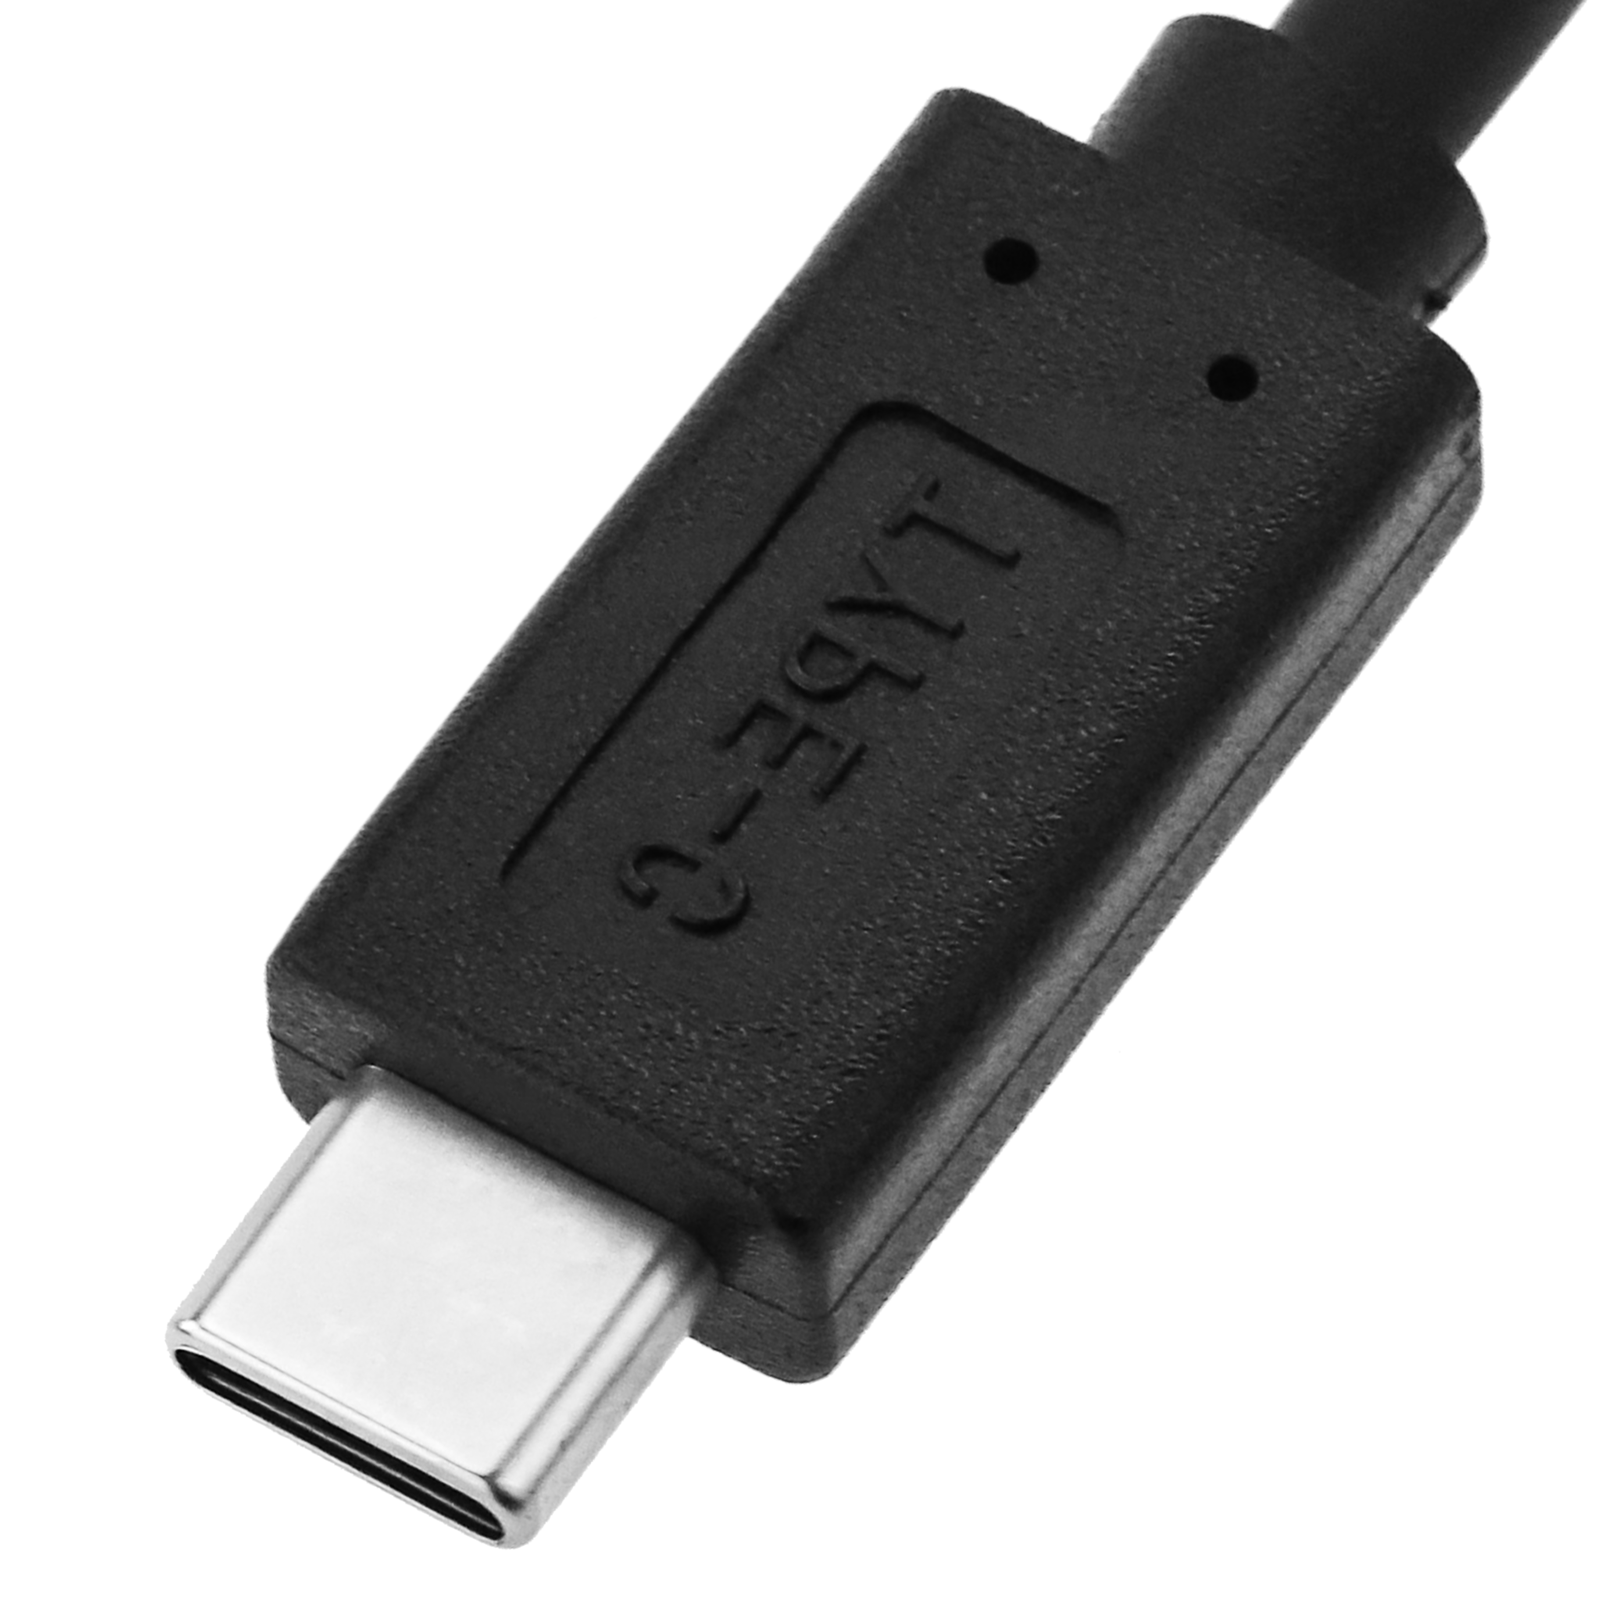 Adaptateur OTG USB 3.0 USB-C mâle vers USB-A femelle noir - Cablematic